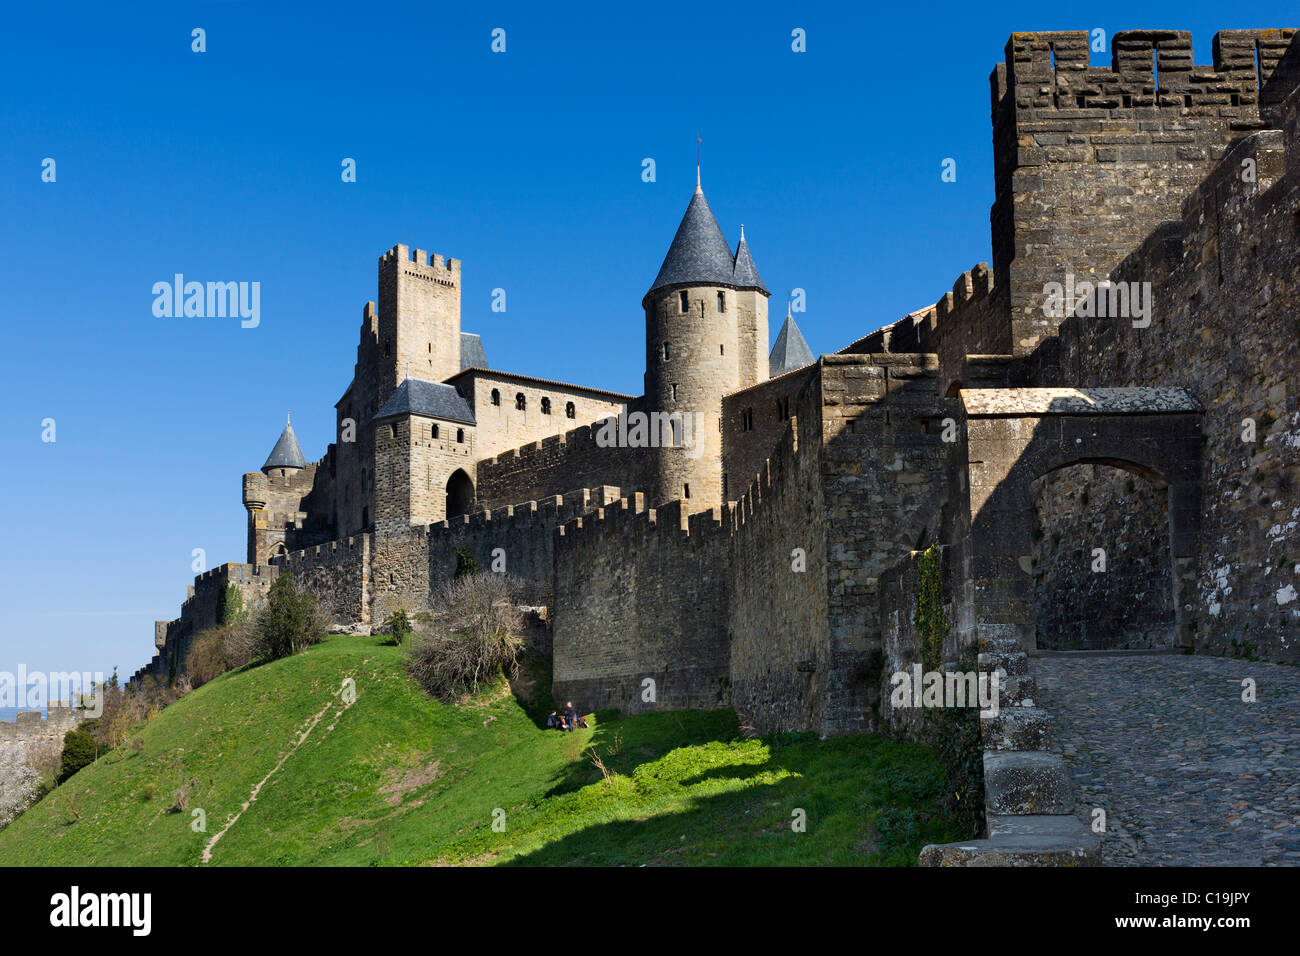 Die Porte de l ' Aude und Chateau Comtal in der mittelalterlichen Stadtmauer (Cite) von Carcassonne, Languedoc, Frankreich Stockfoto